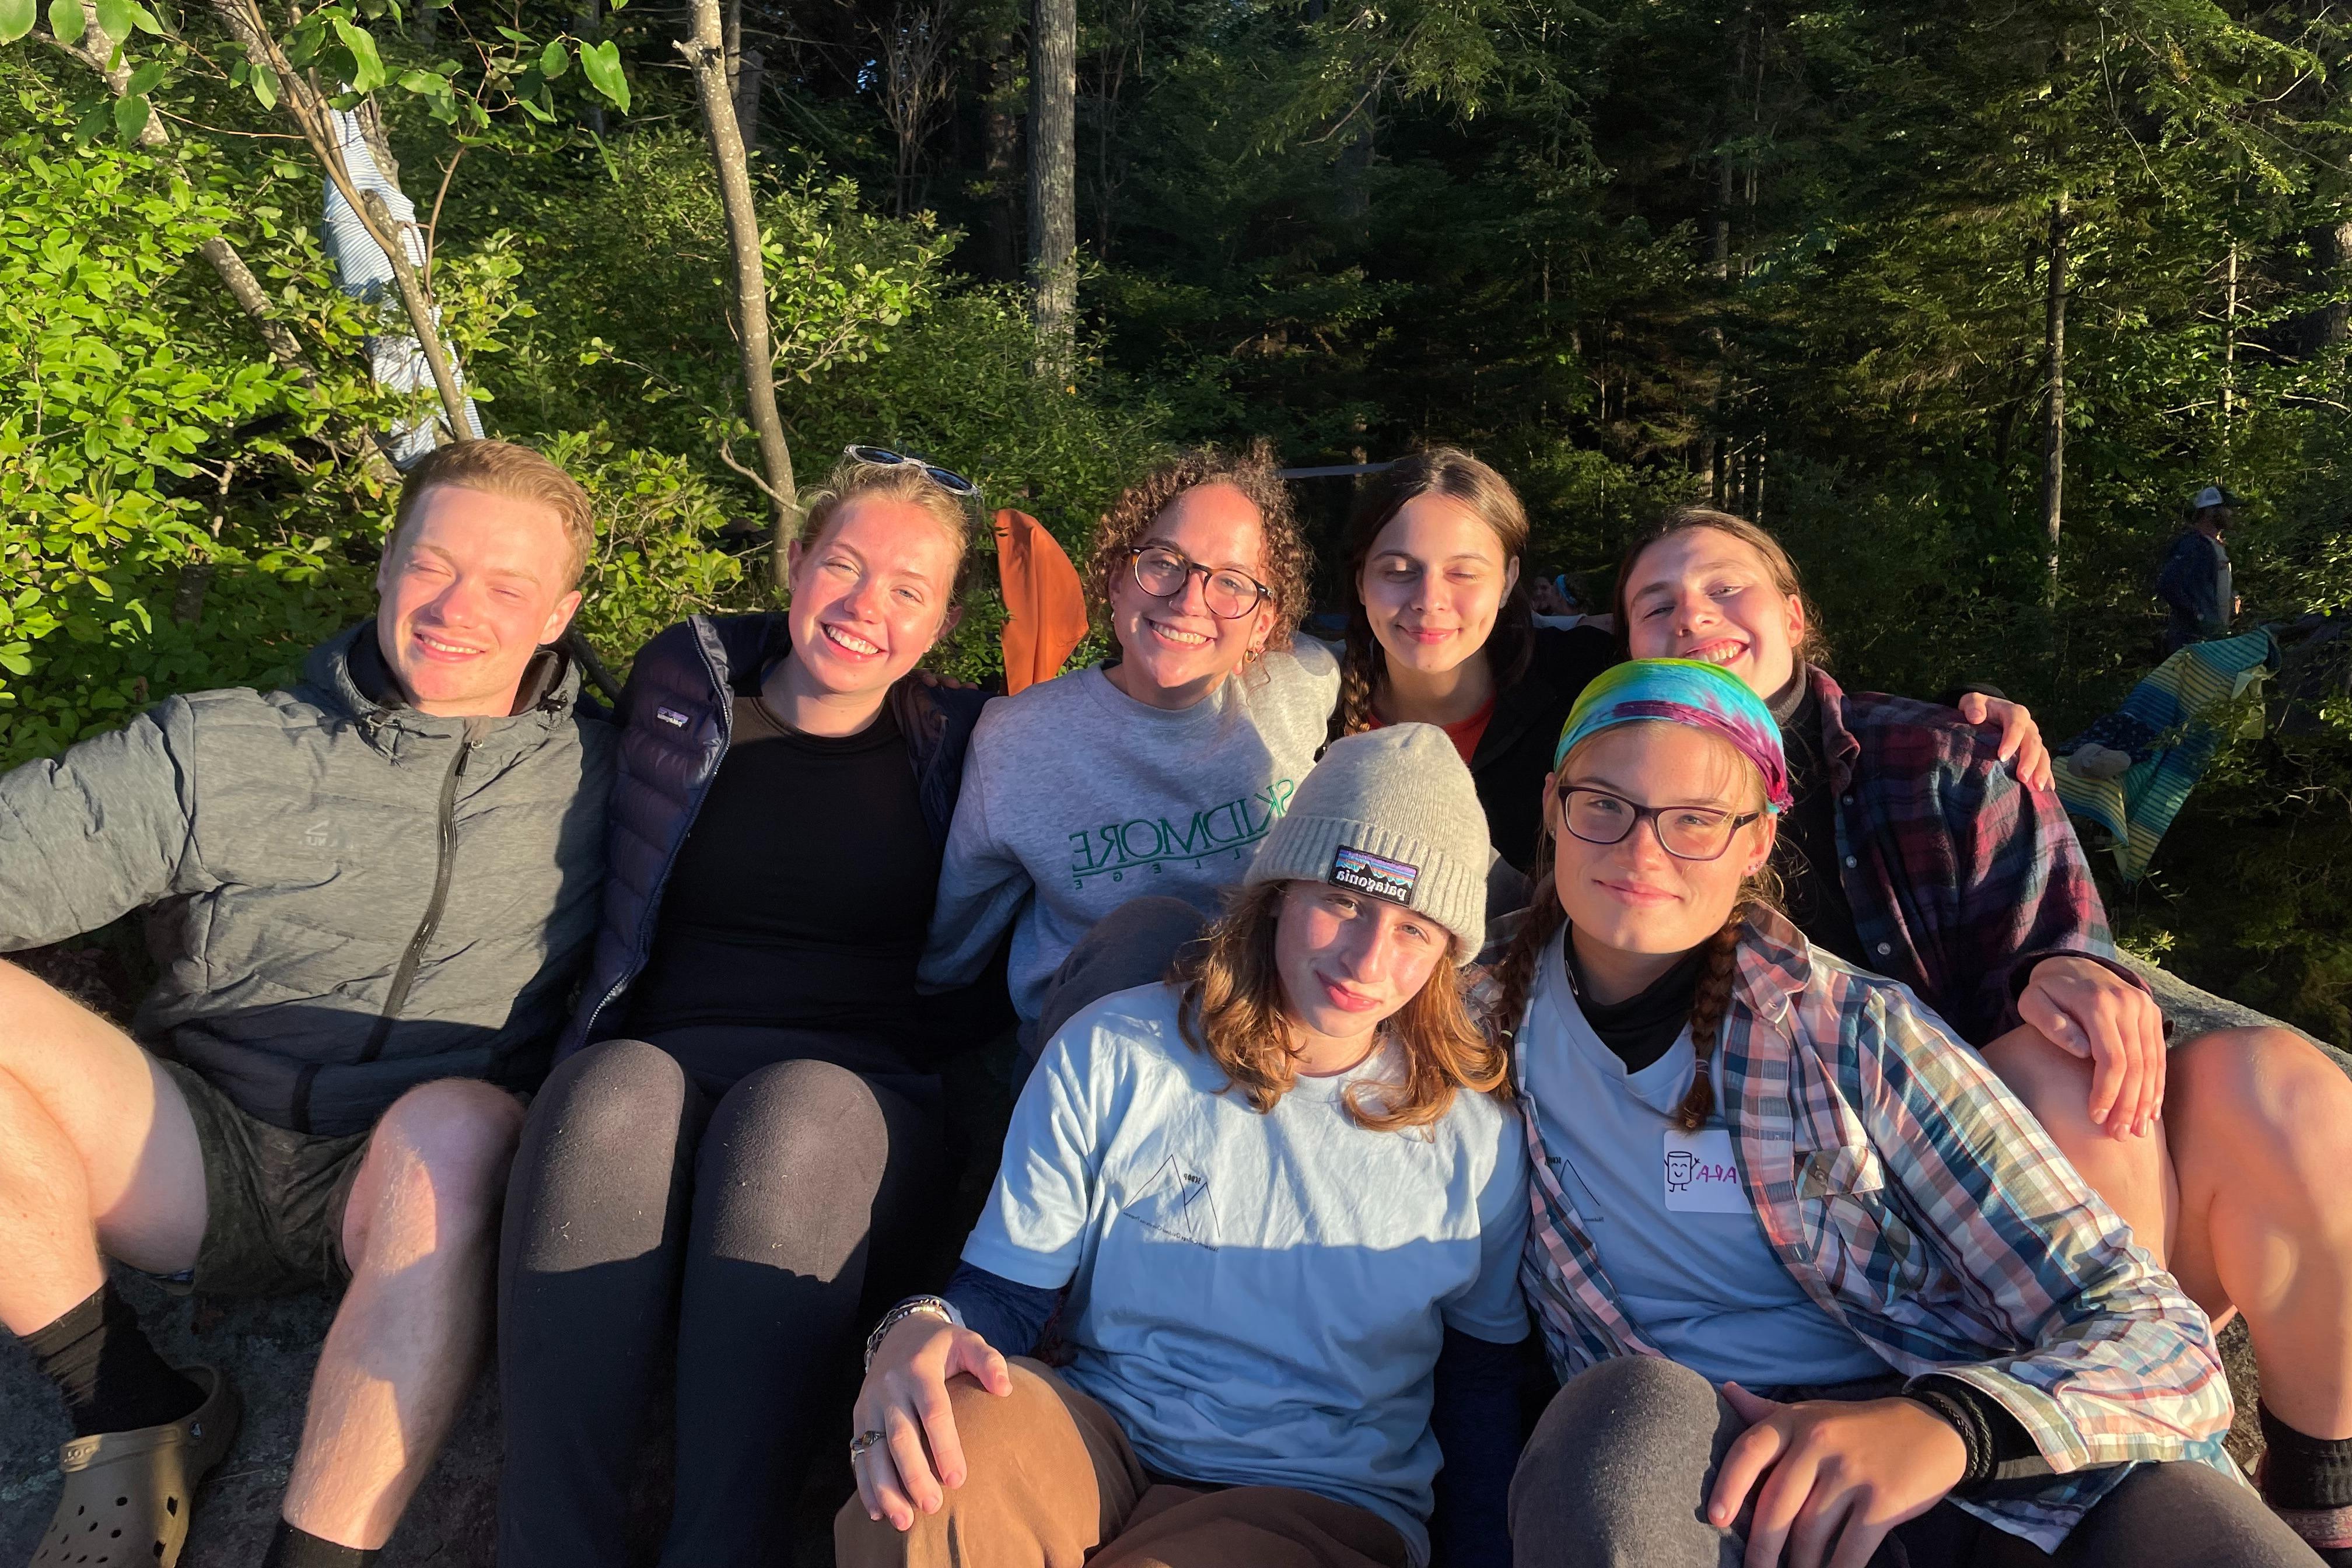 七名学生(包括凯蒂·汉密尔顿)坐在那里，对着阳光微笑. 在背景中可以看到茂密的树木和绿色植物.